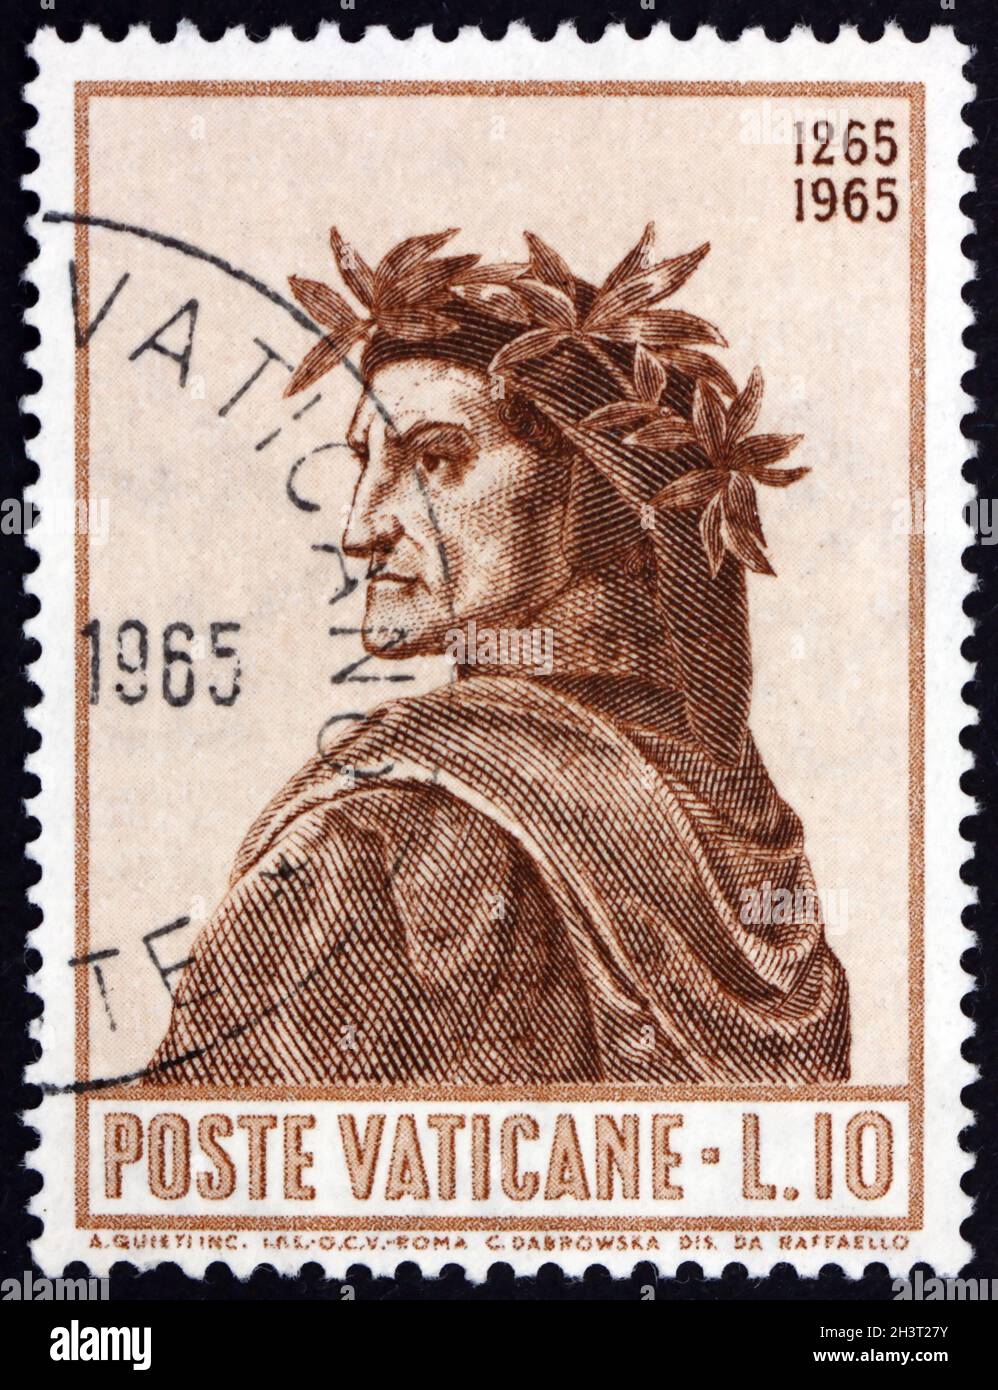 VATIKAN - UM 1965: Eine im Vatikan gedruckte Briefmarke zeigt Dante von Raphael, Geburt von Dante Alighieri, 700-jähriges Jubiläum, um 1965 Stockfoto